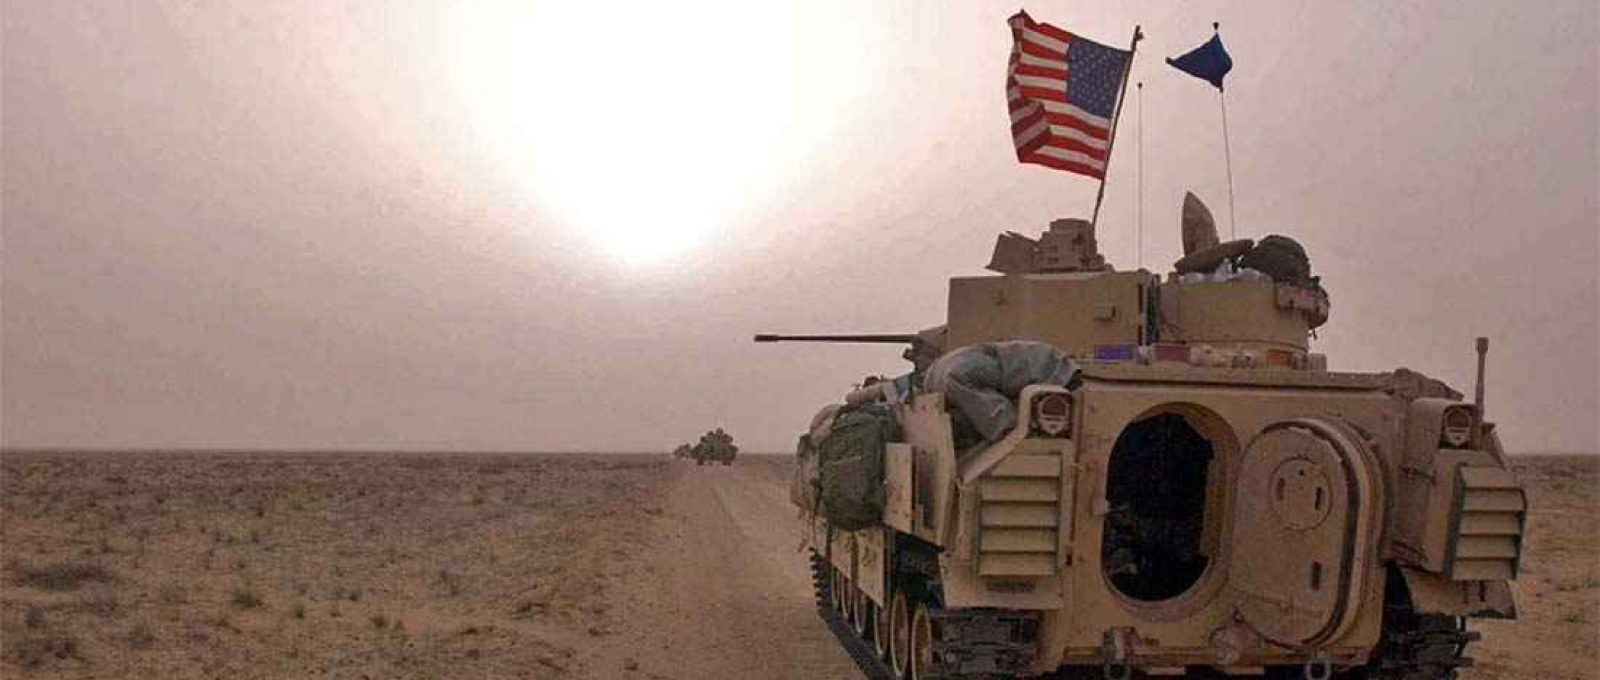 Carros de combate do Exército dos EUA ocupam posições ao longo de uma estrada na zona desmilitarizada entre o Kuwait e o Iraque em 19 de março de 2003, antes da invasão do Iraque (Foto: Scott Nelson/Getty).